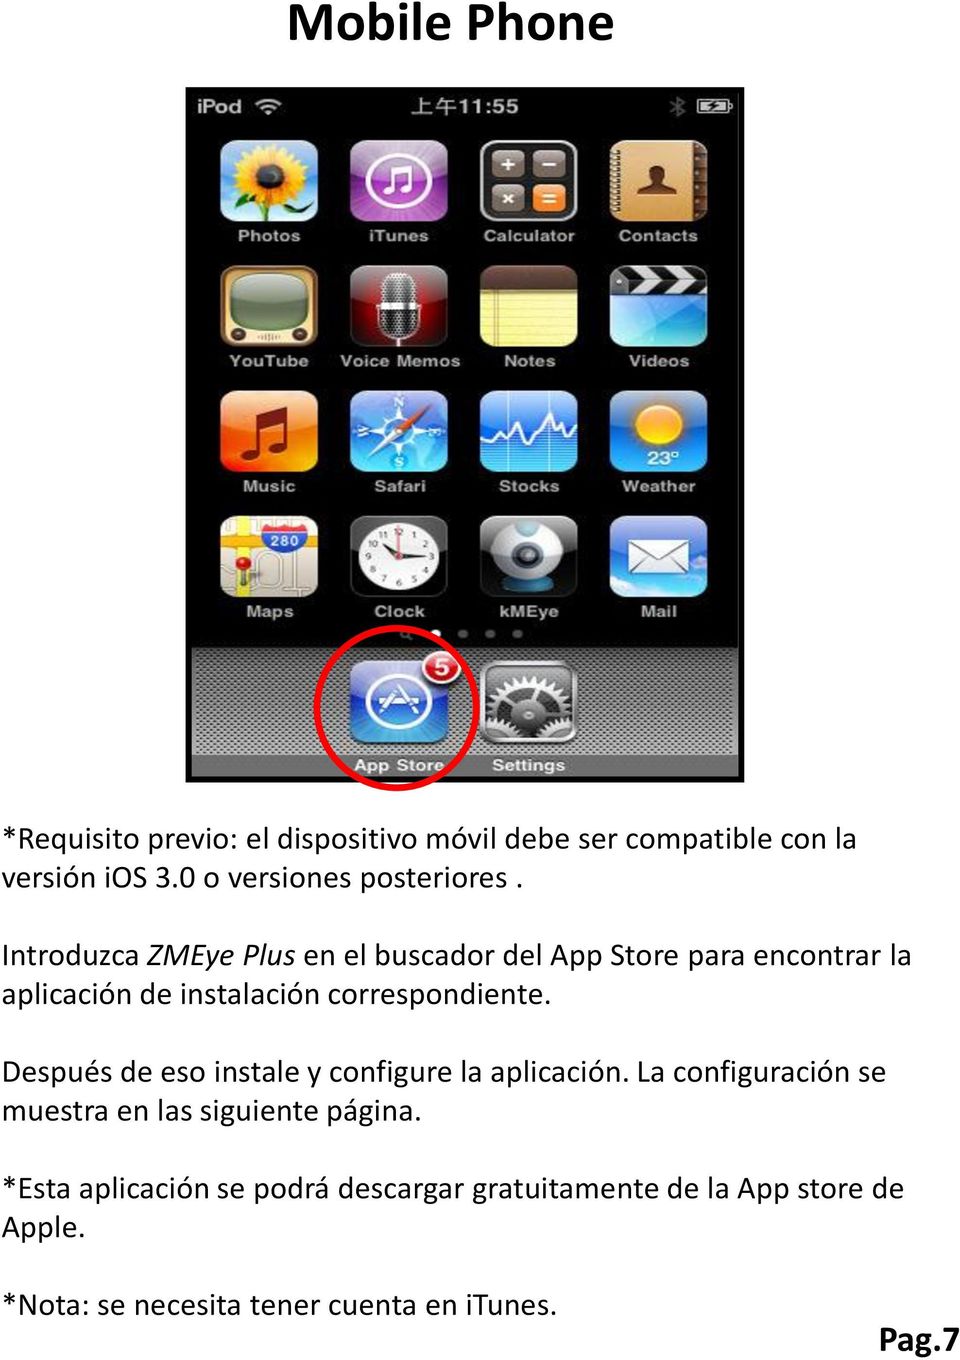 Introduzca ZMEye Plus en el buscador del App Store para encontrar la aplicación de instalación correspondiente.